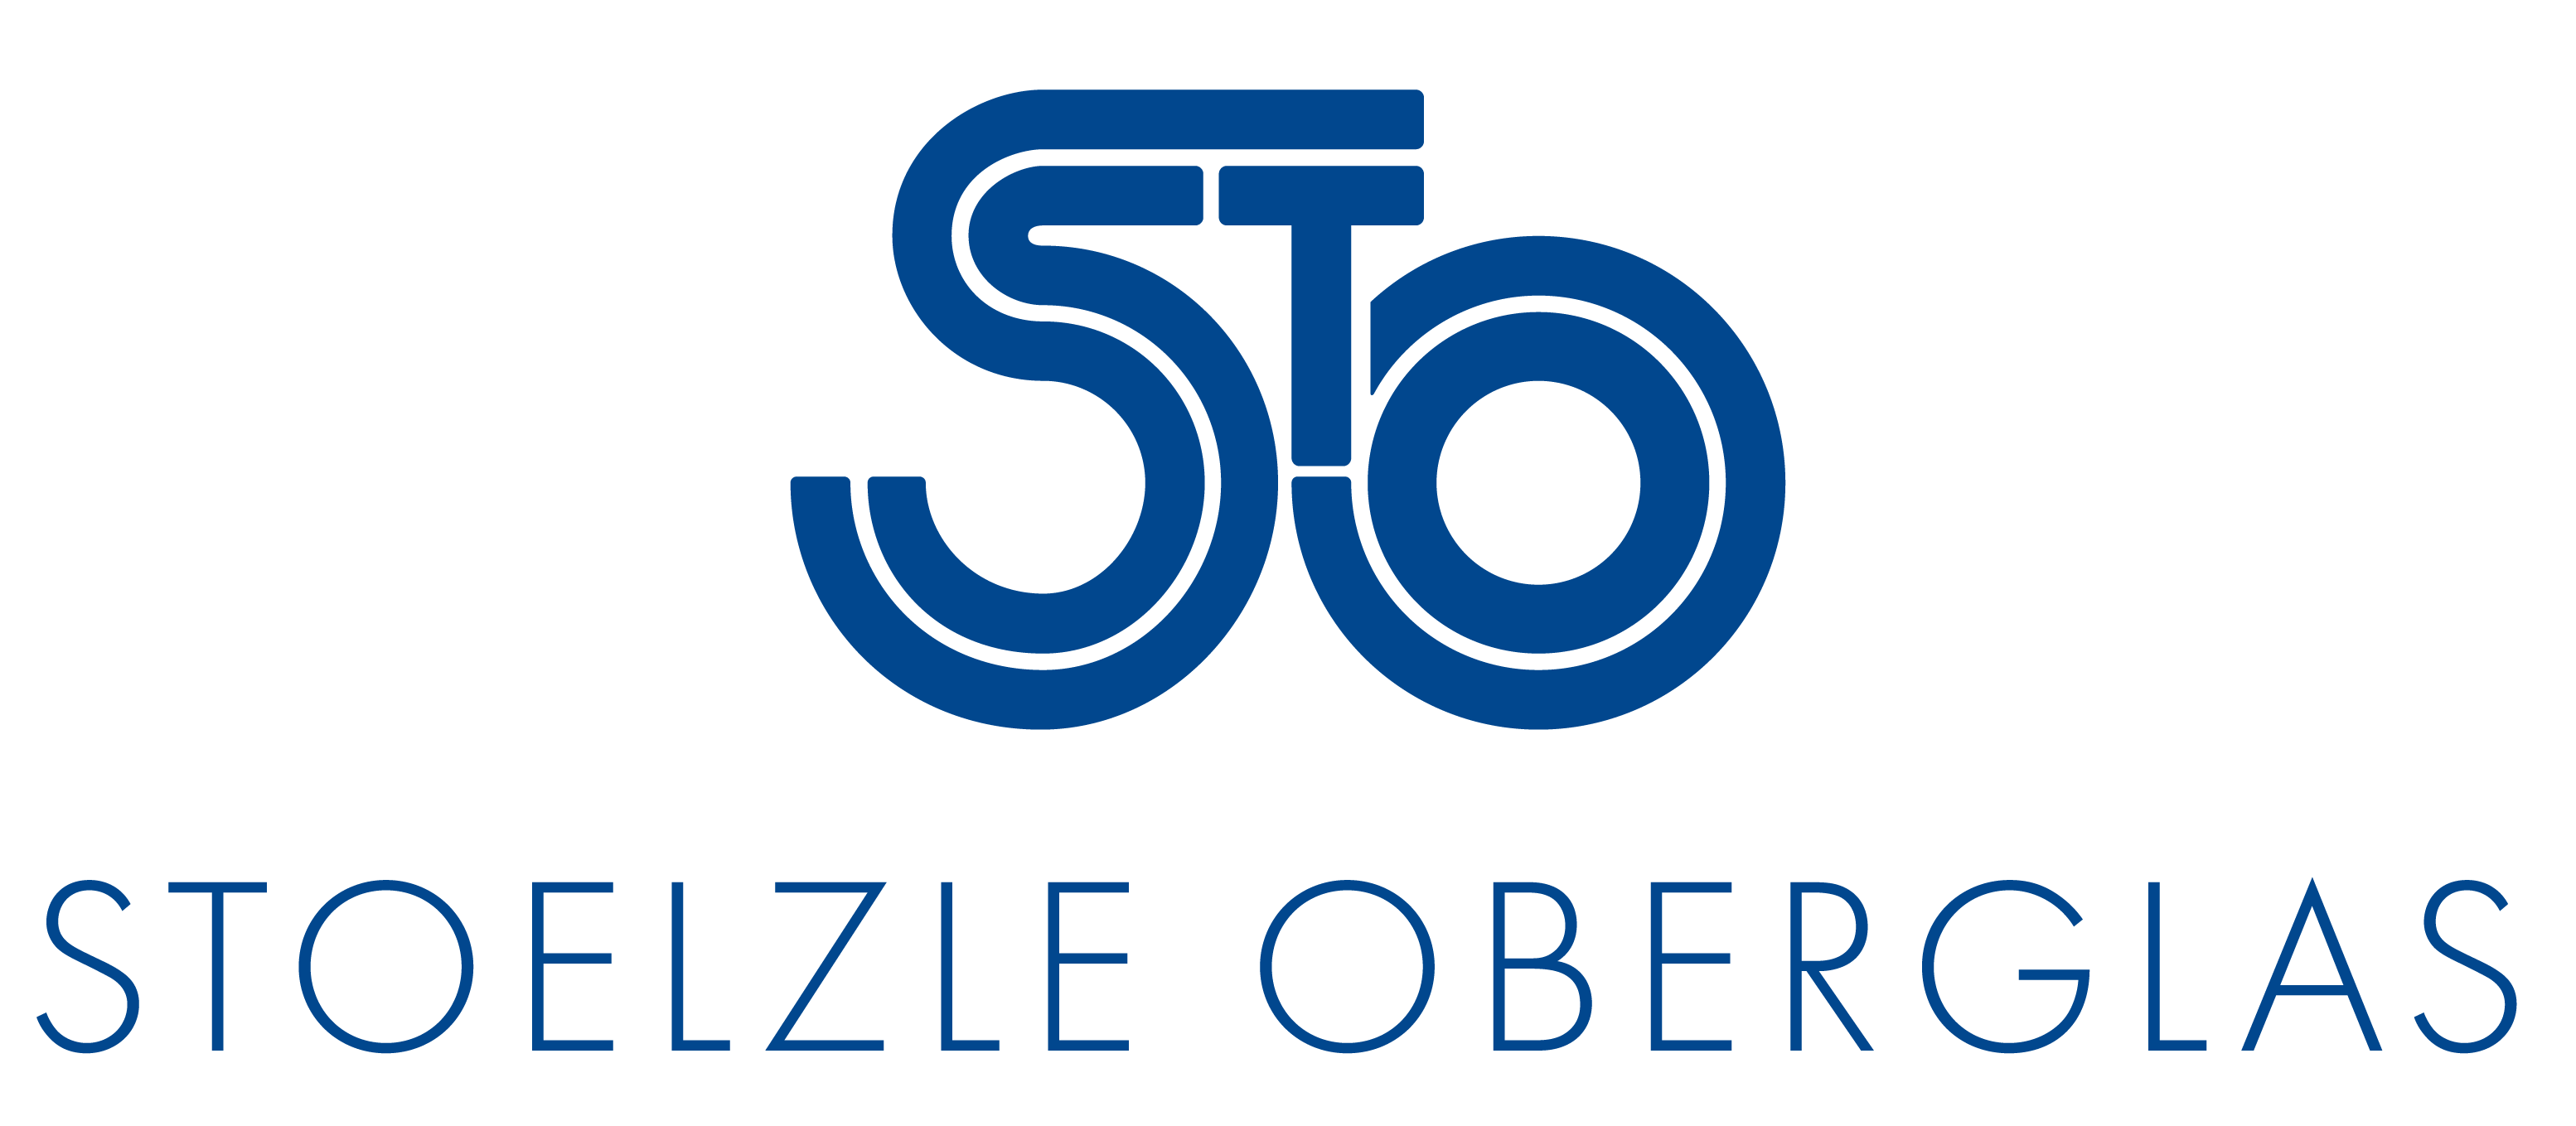 Stoelzle Oberglas GmbH